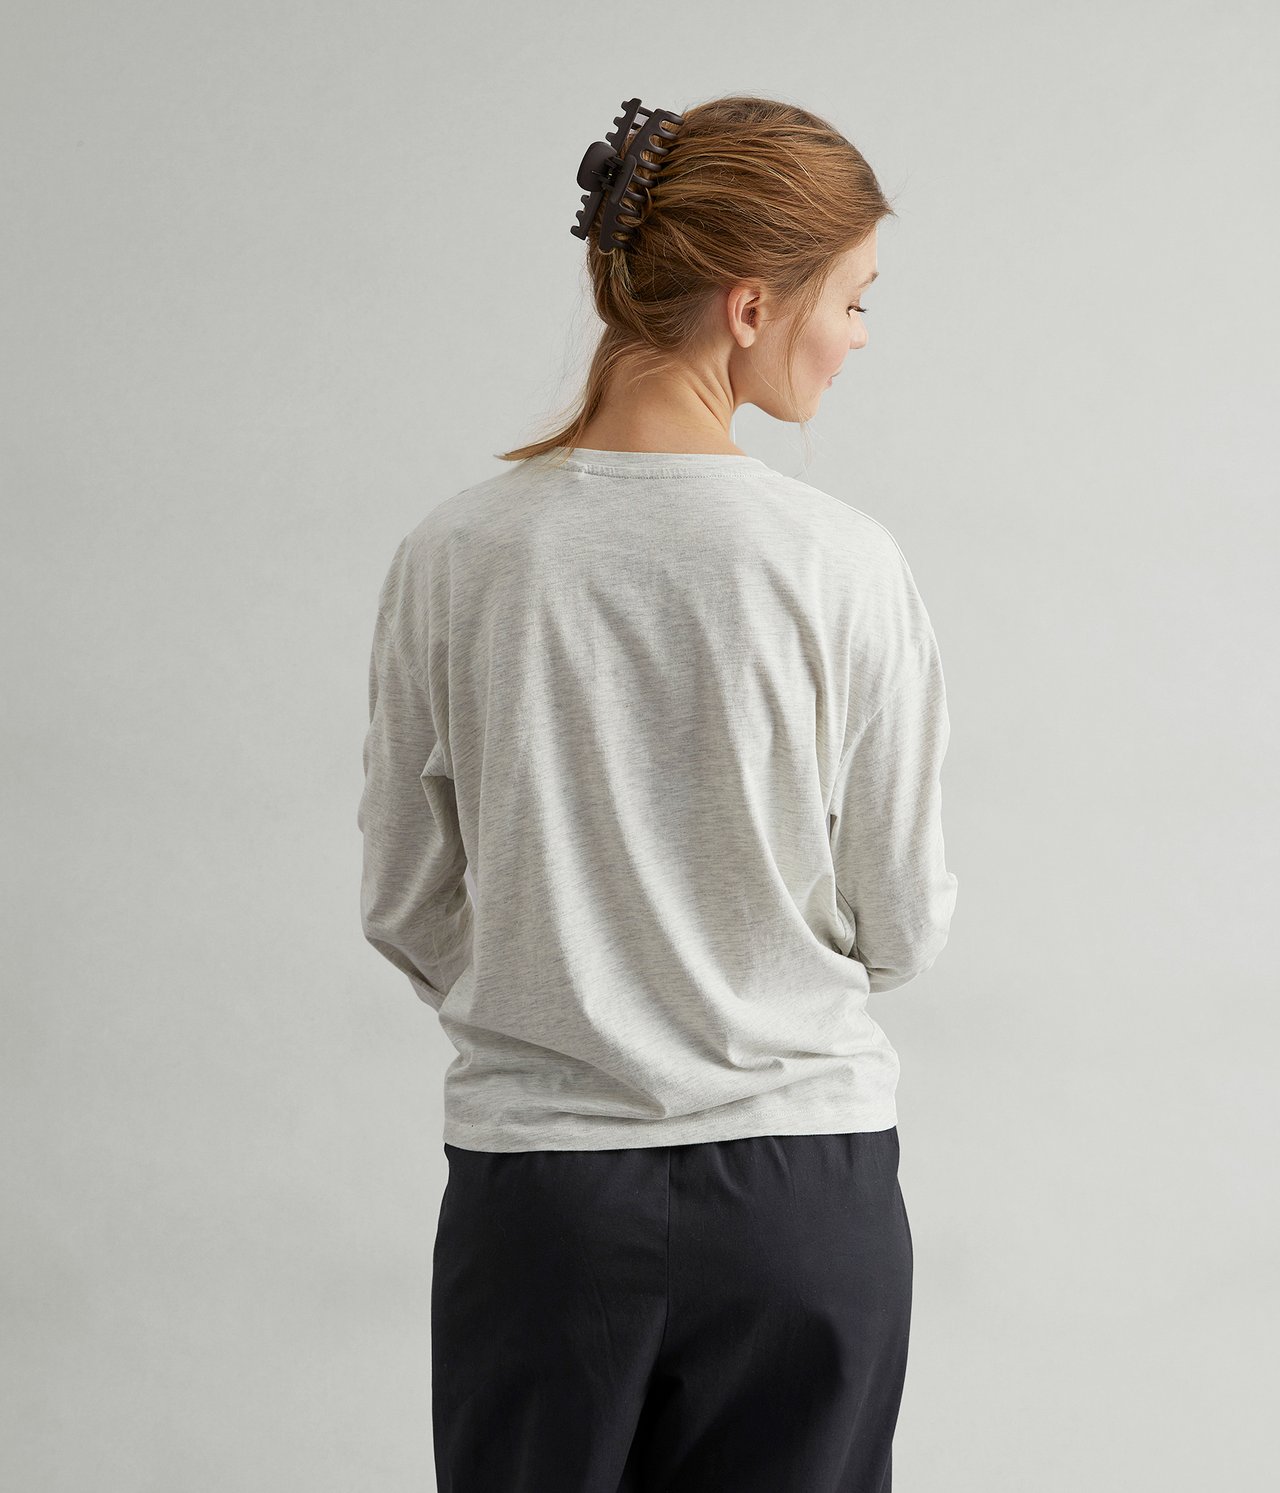 Pitkähihainen paita, jossa on drapeeraus - Vaaleanharmaa - 175cm / Storlek: S - 3